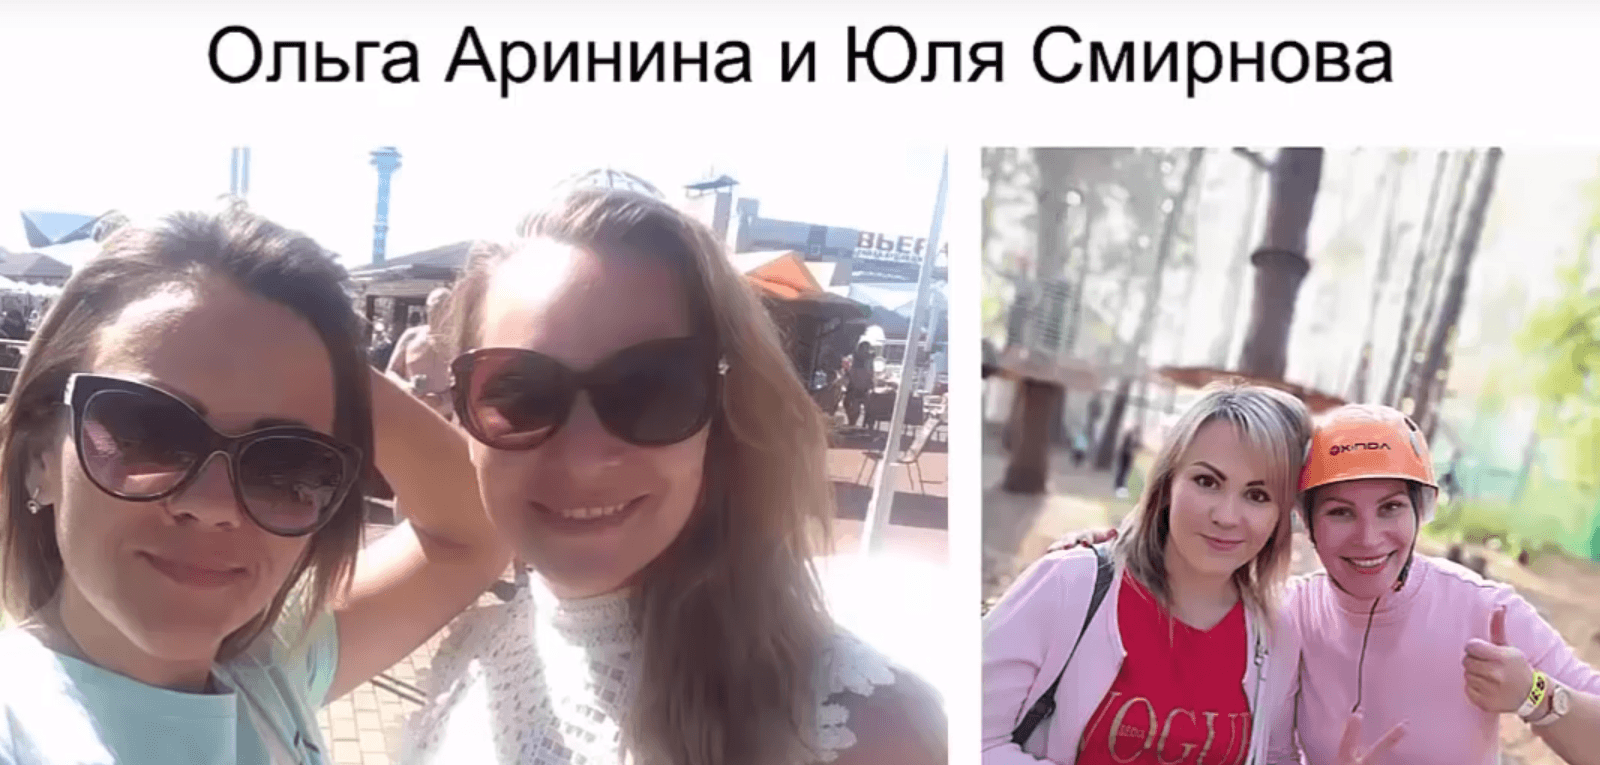 Денежный Мобильник, Ольга Аринина, Юлия Смирнова